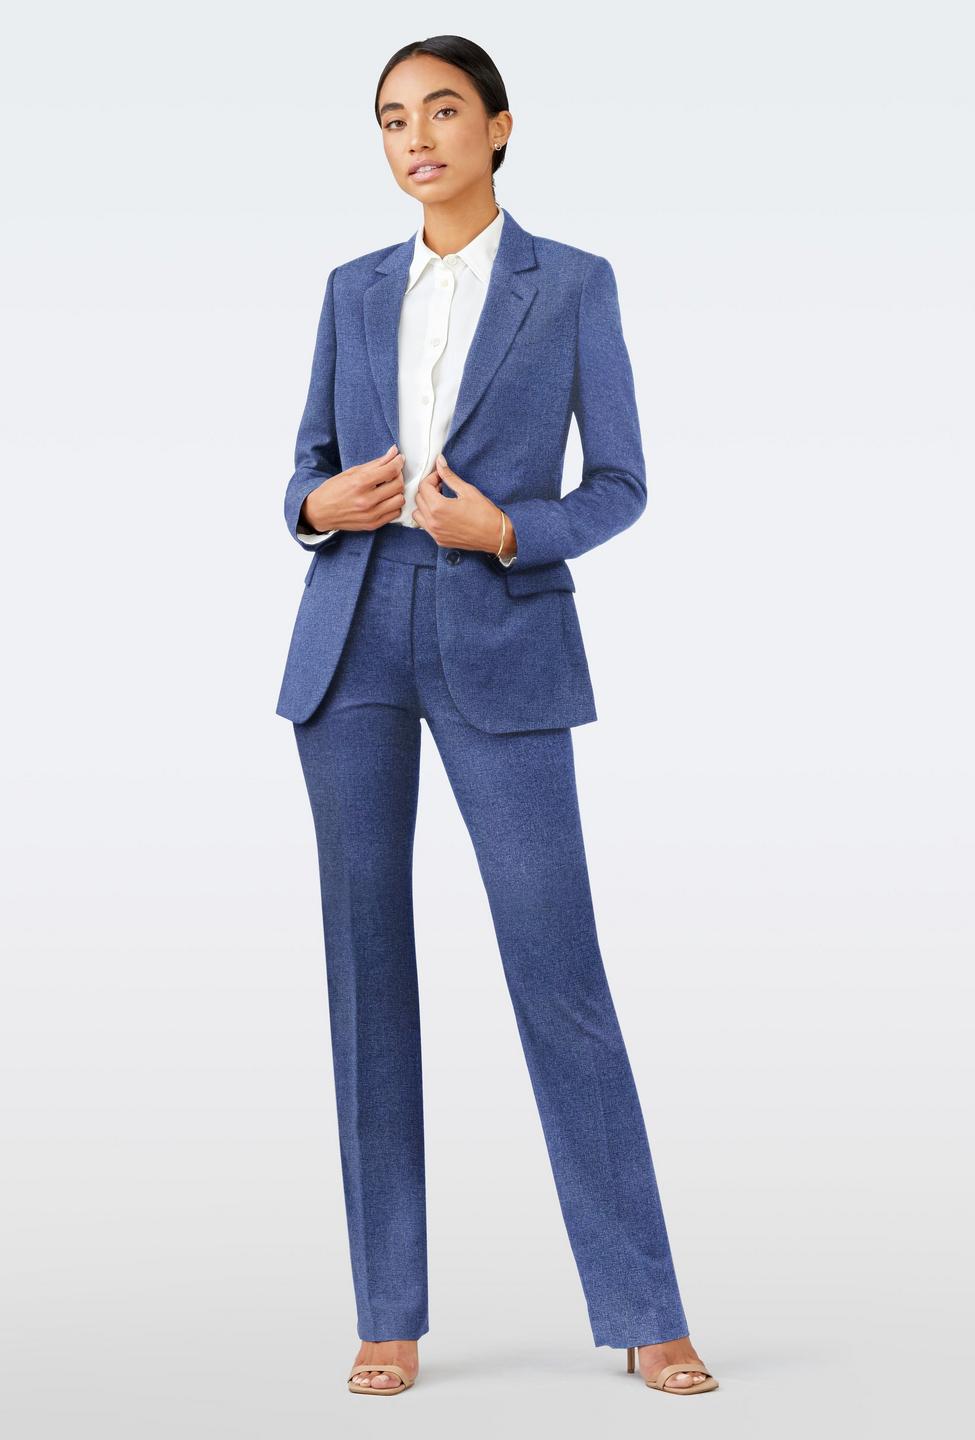 Montella Wool Cotton Silk Blue Suit